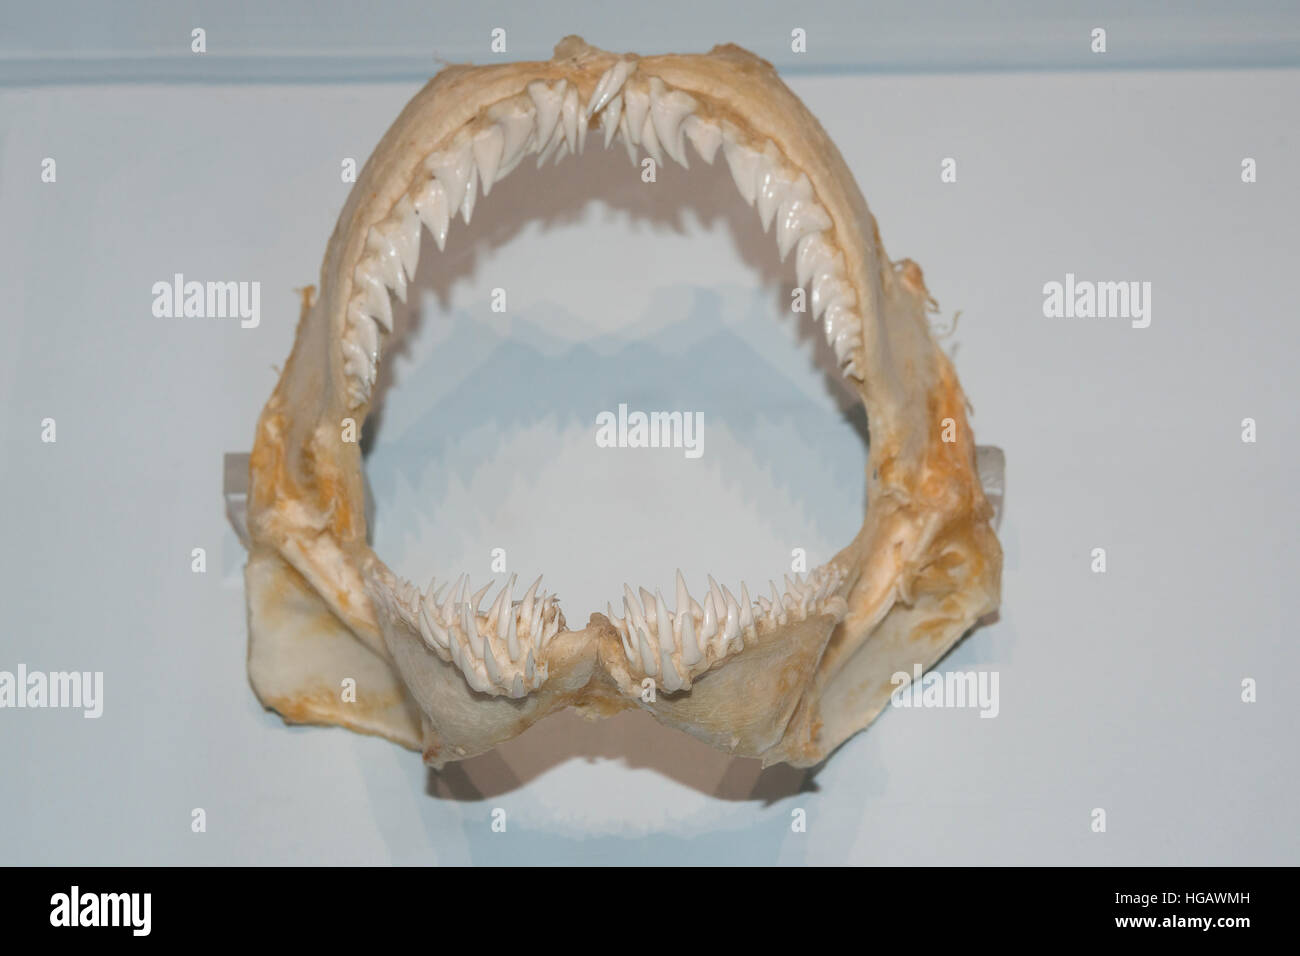 Dans les dents de requin, requin fossile mâchoires Hemipristis elongata, à l'affiche au Musée Océanographique de Monaco Musée Océanographique de Monaco ( ) Banque D'Images